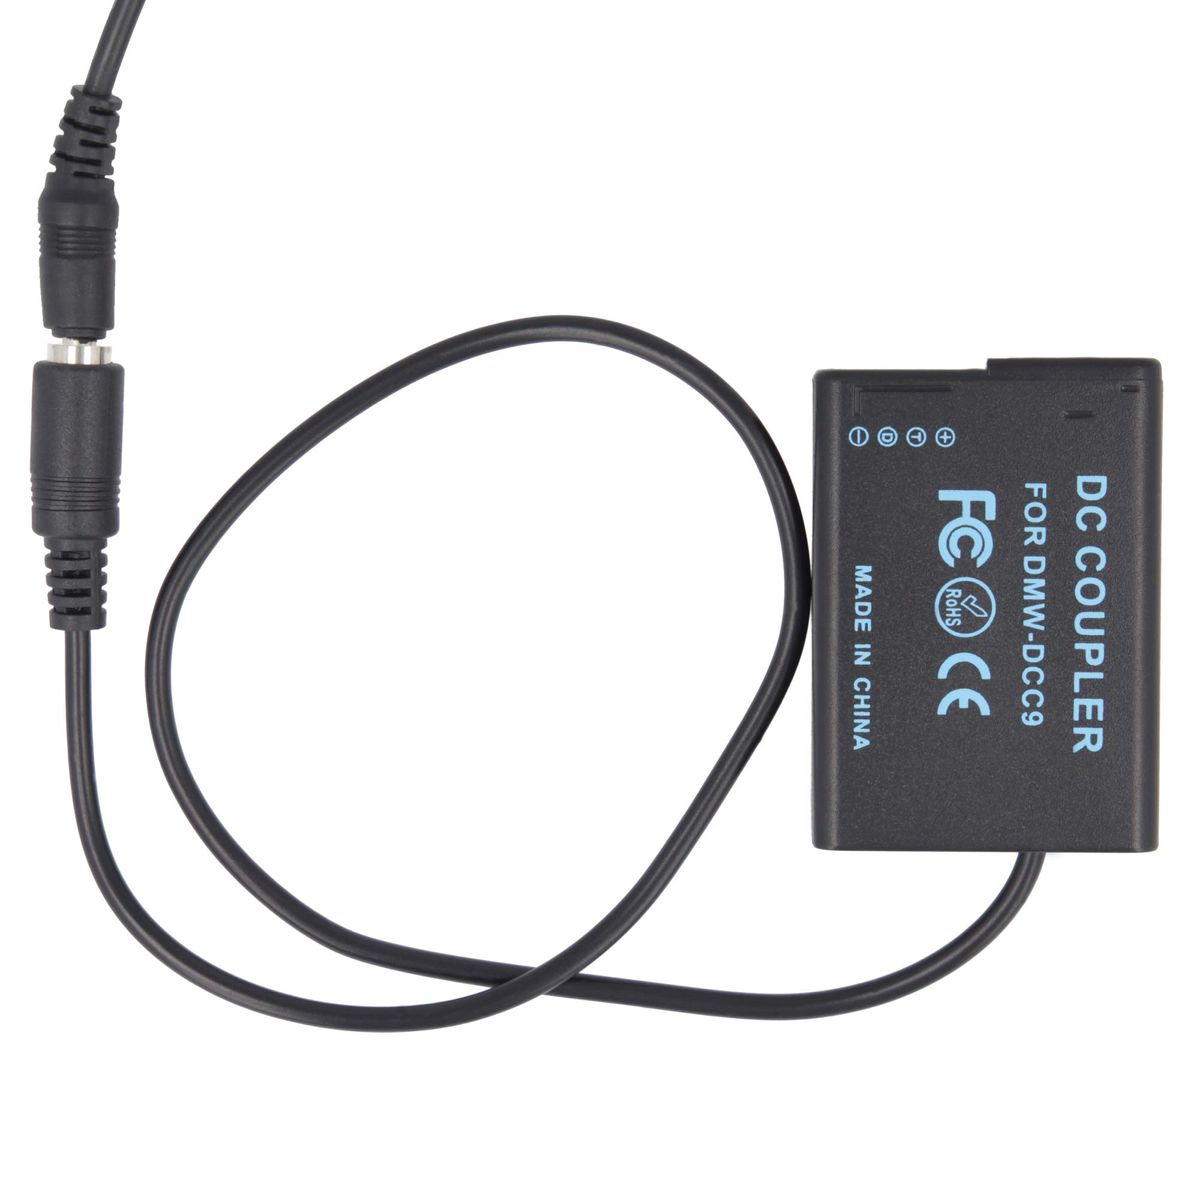 AKKU-KING USB-C Adapter + mit Ladegerät Panasonic, Kuppler kompatibel Panasonic keine Angabe DCC9